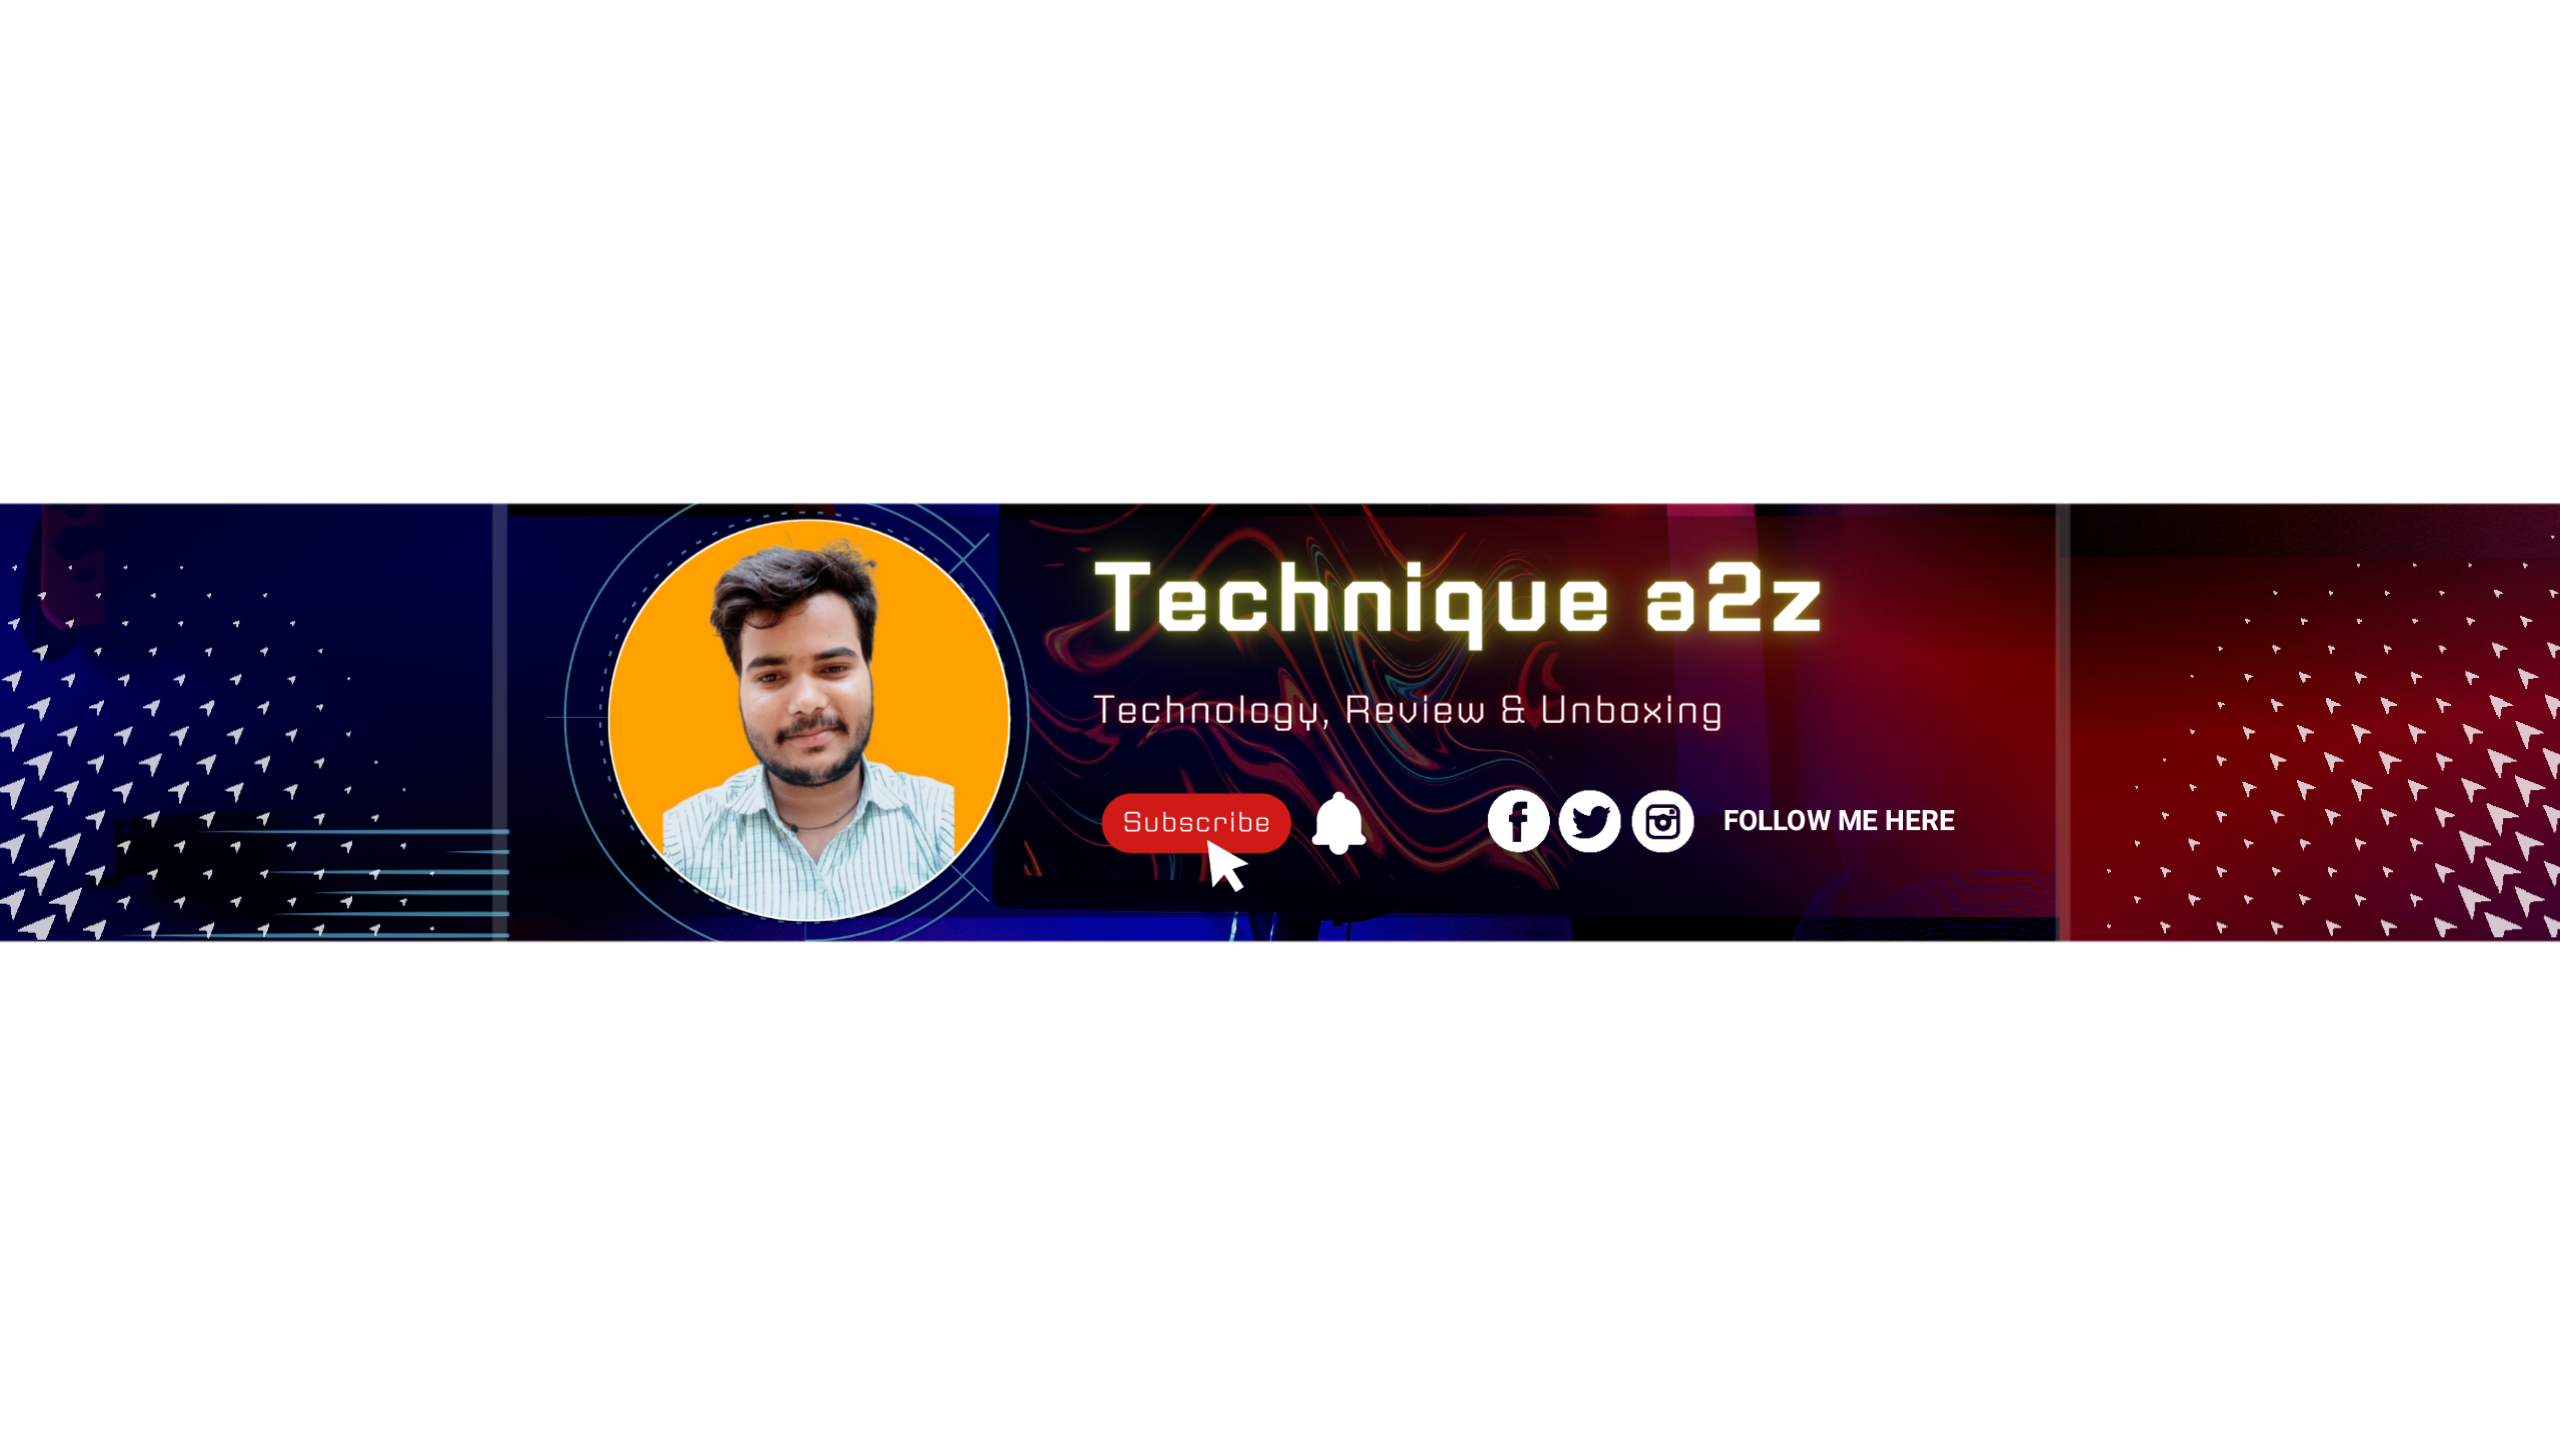 Technique a2z